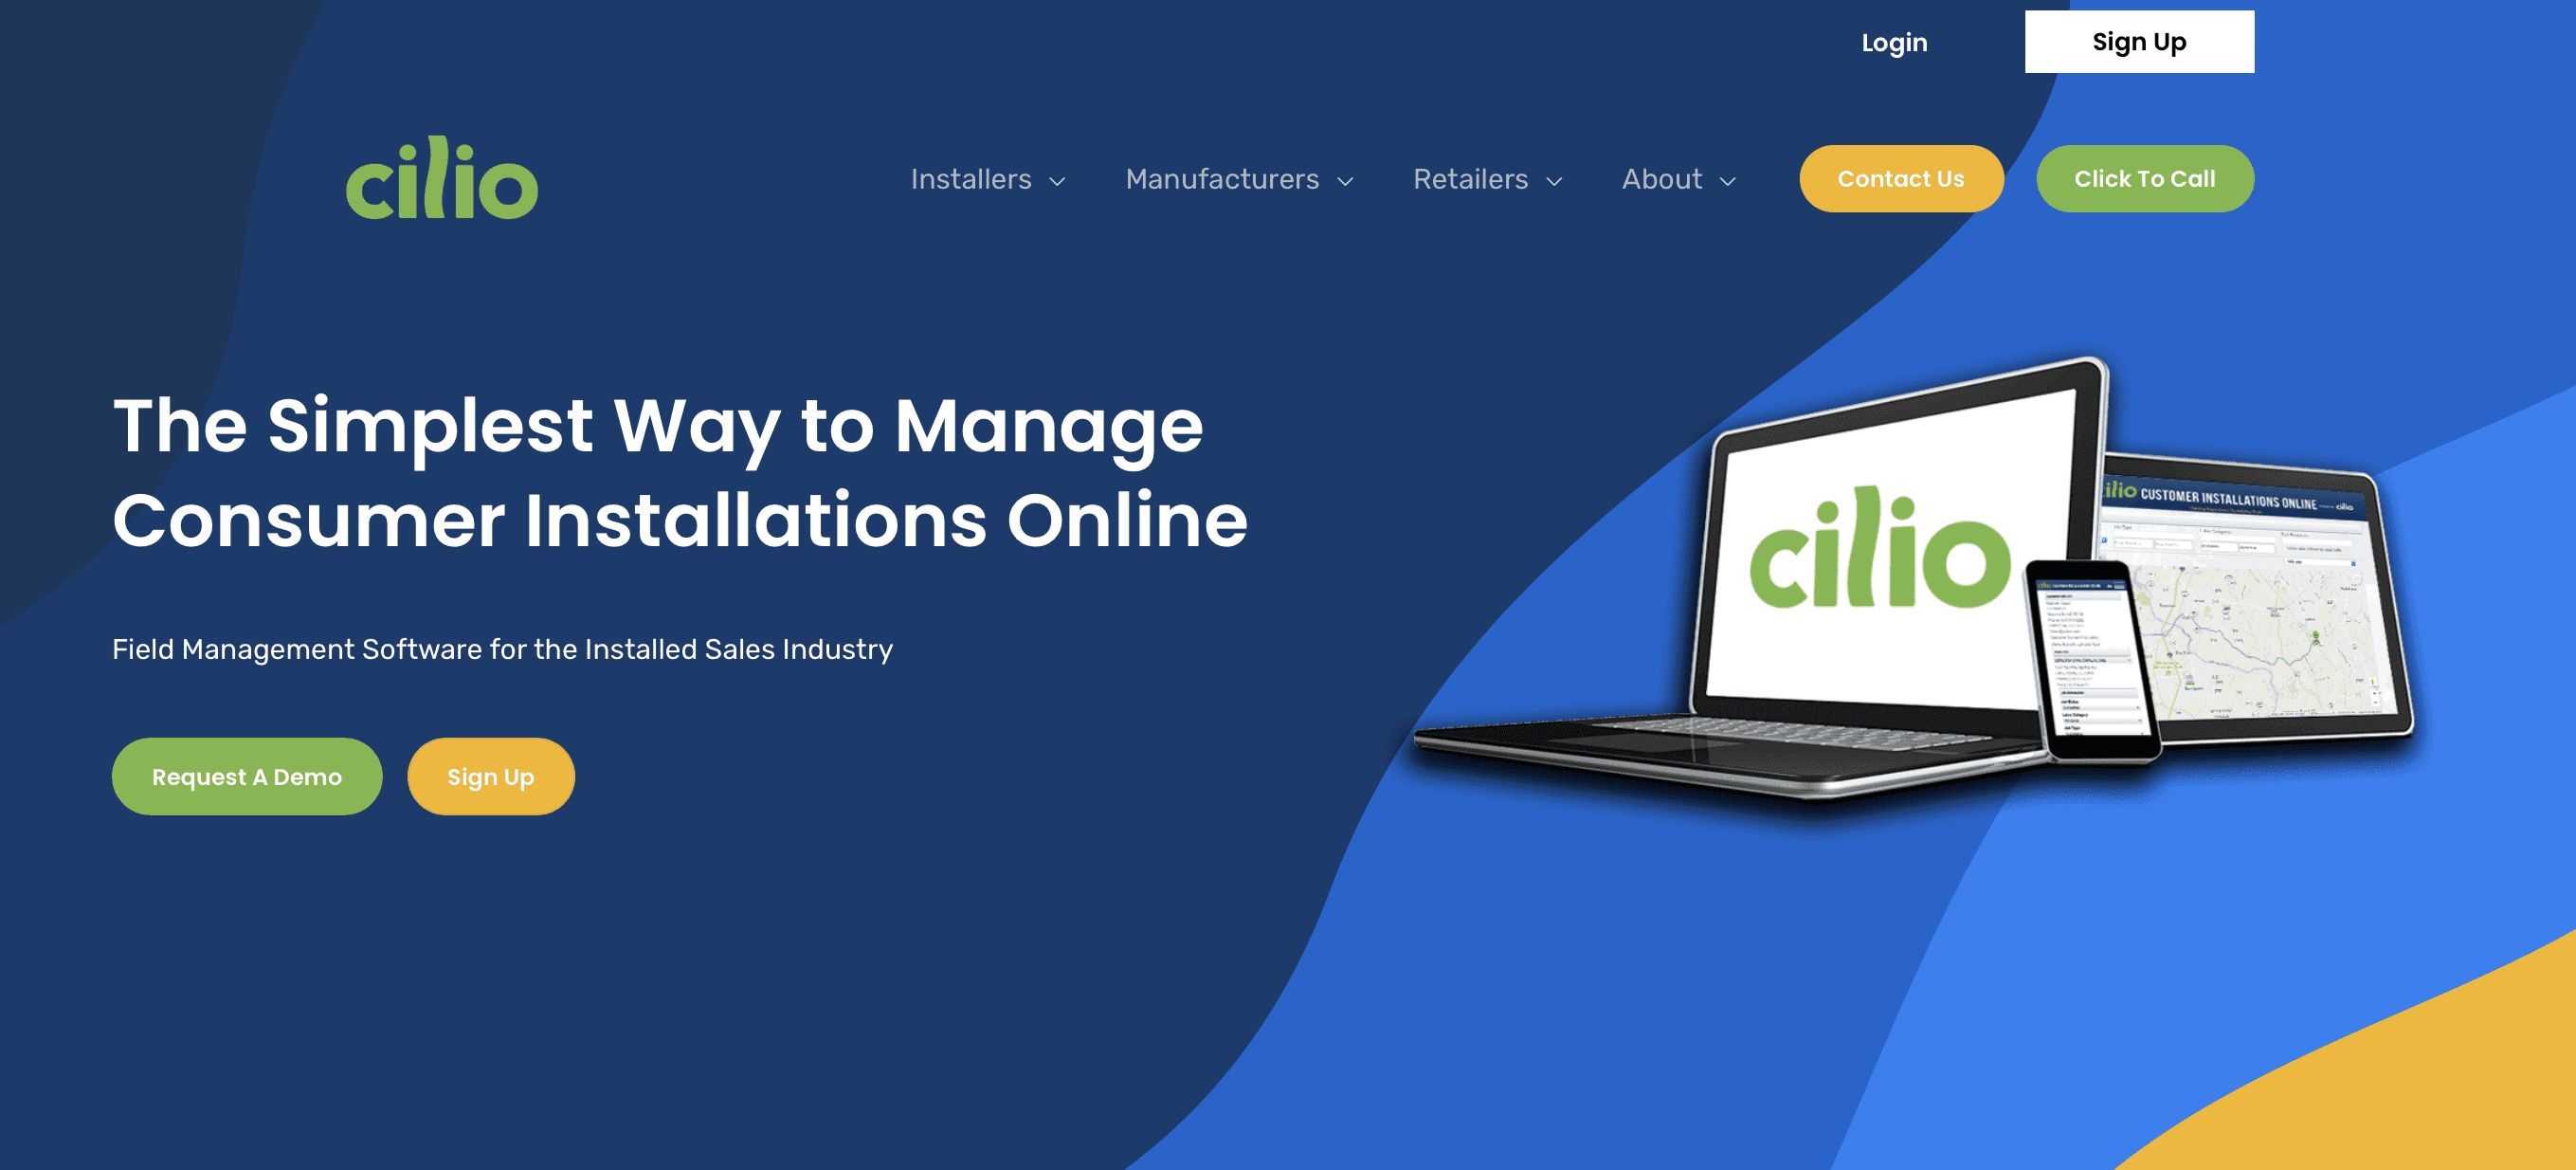 Cilio website